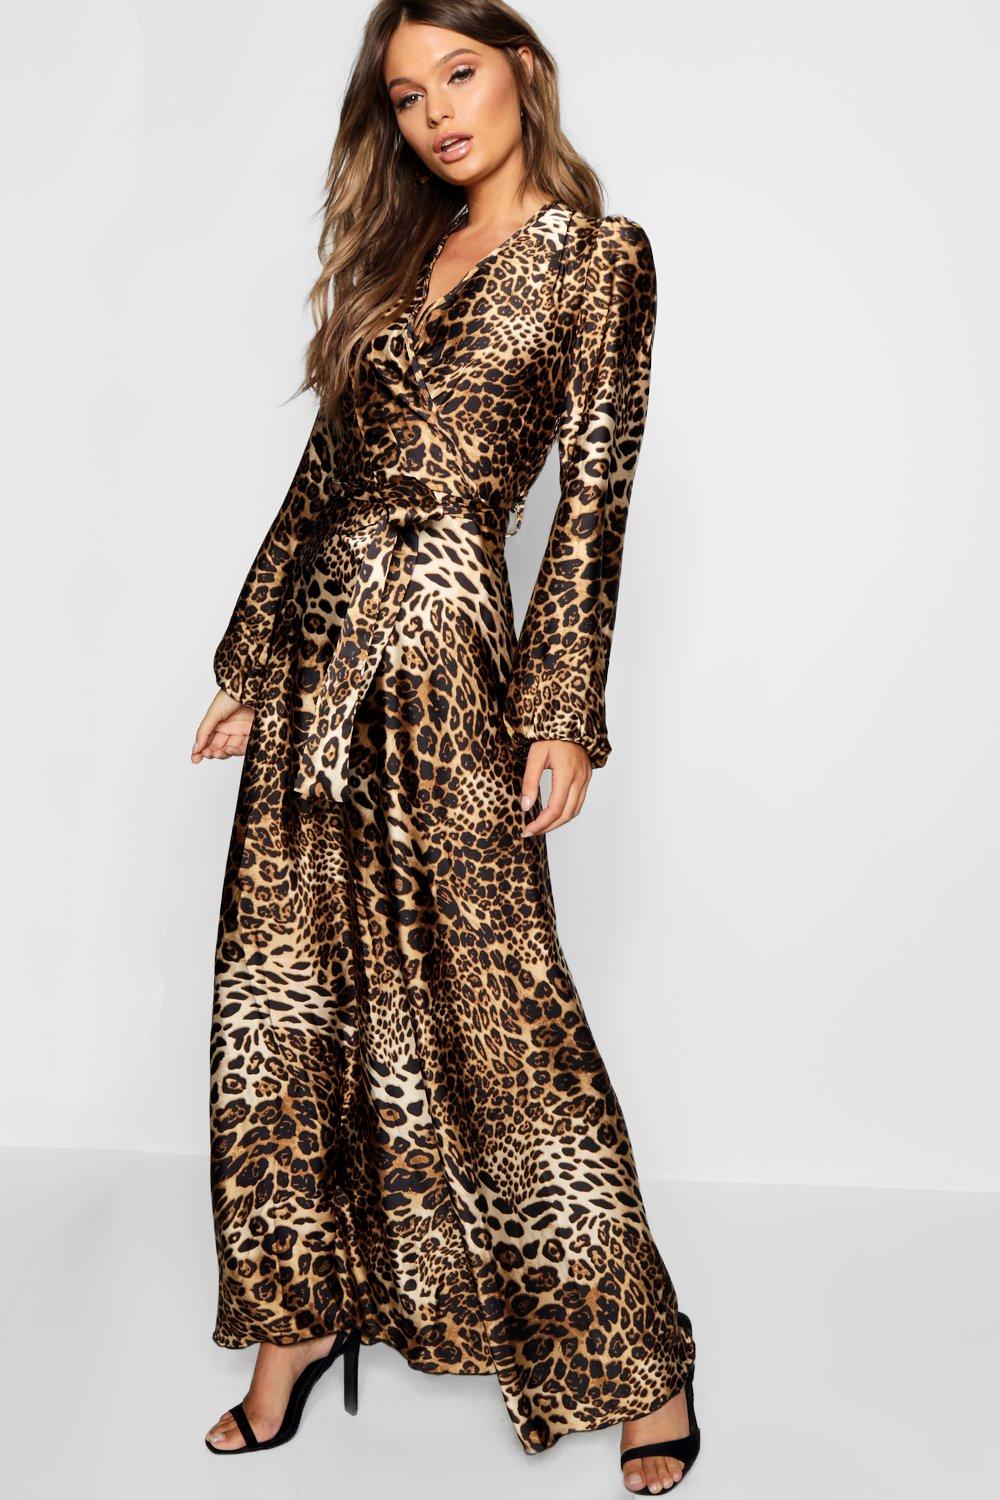 satin leopard print dress